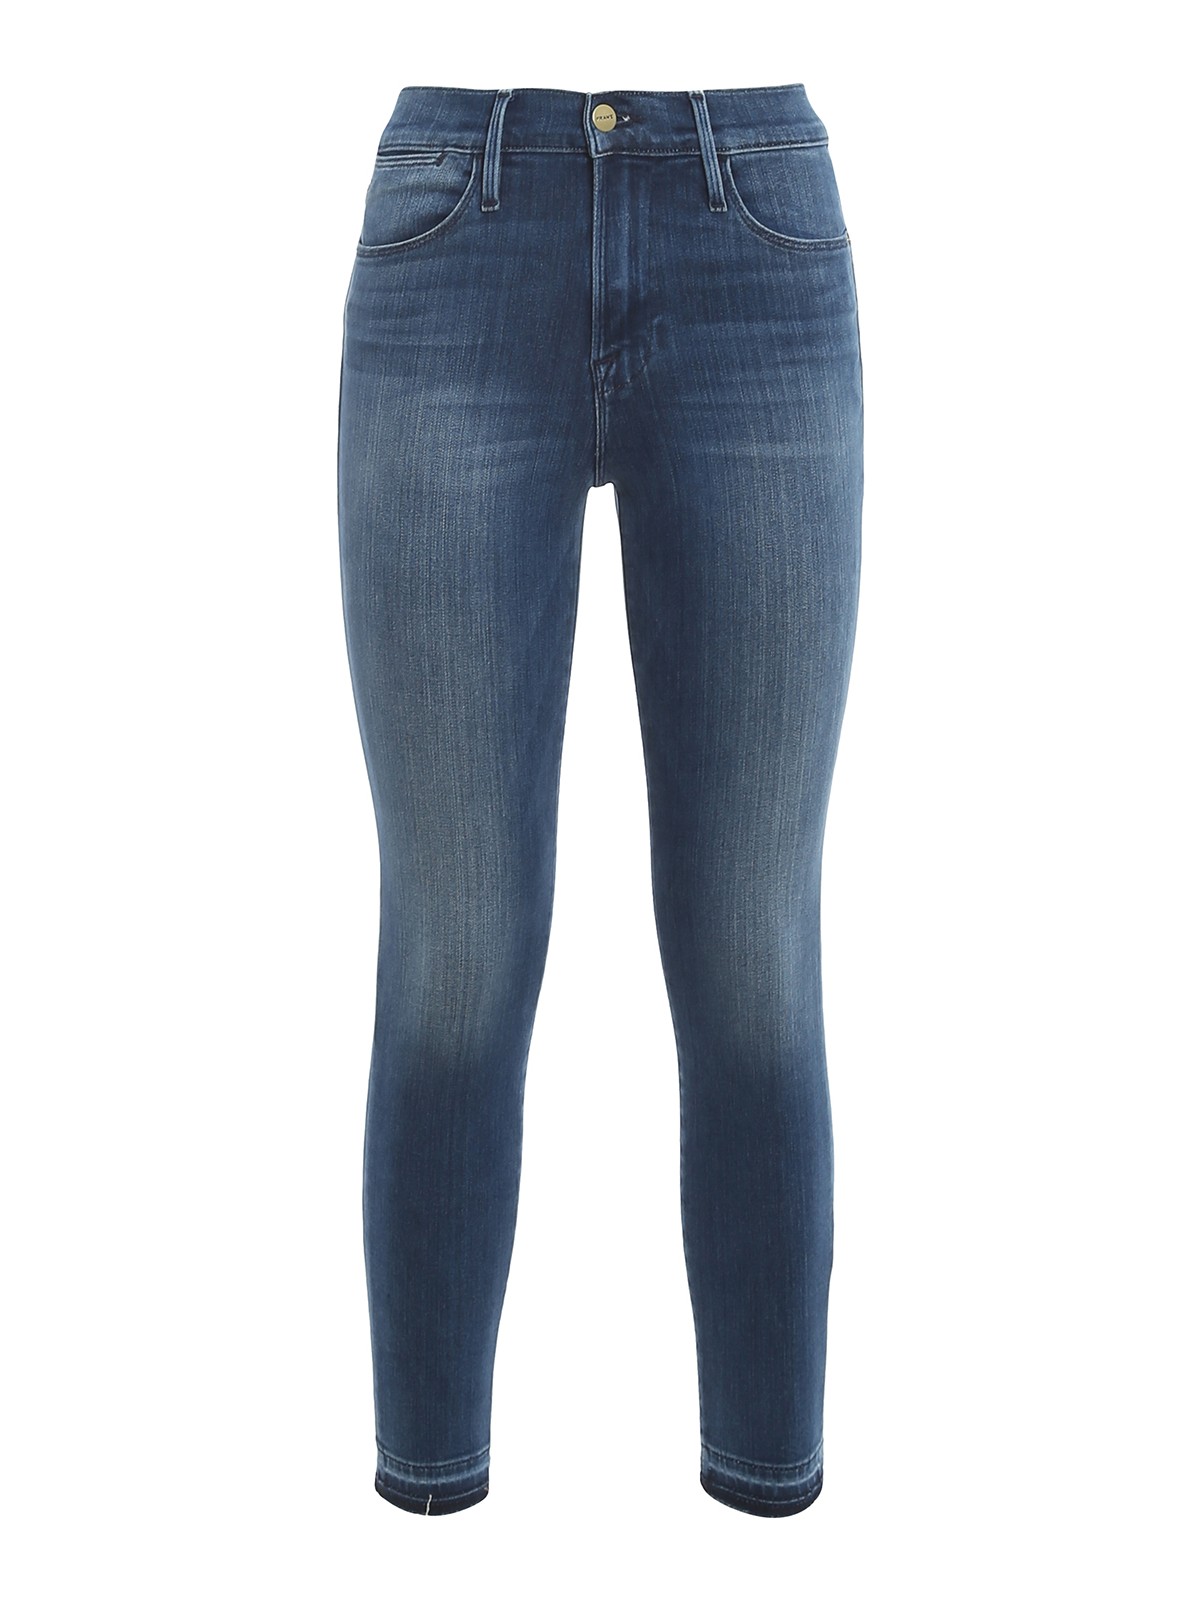 Skinny jeans Frame - Le High Skinny Crop jeans - LHSKCRH214 | iKRIX.com